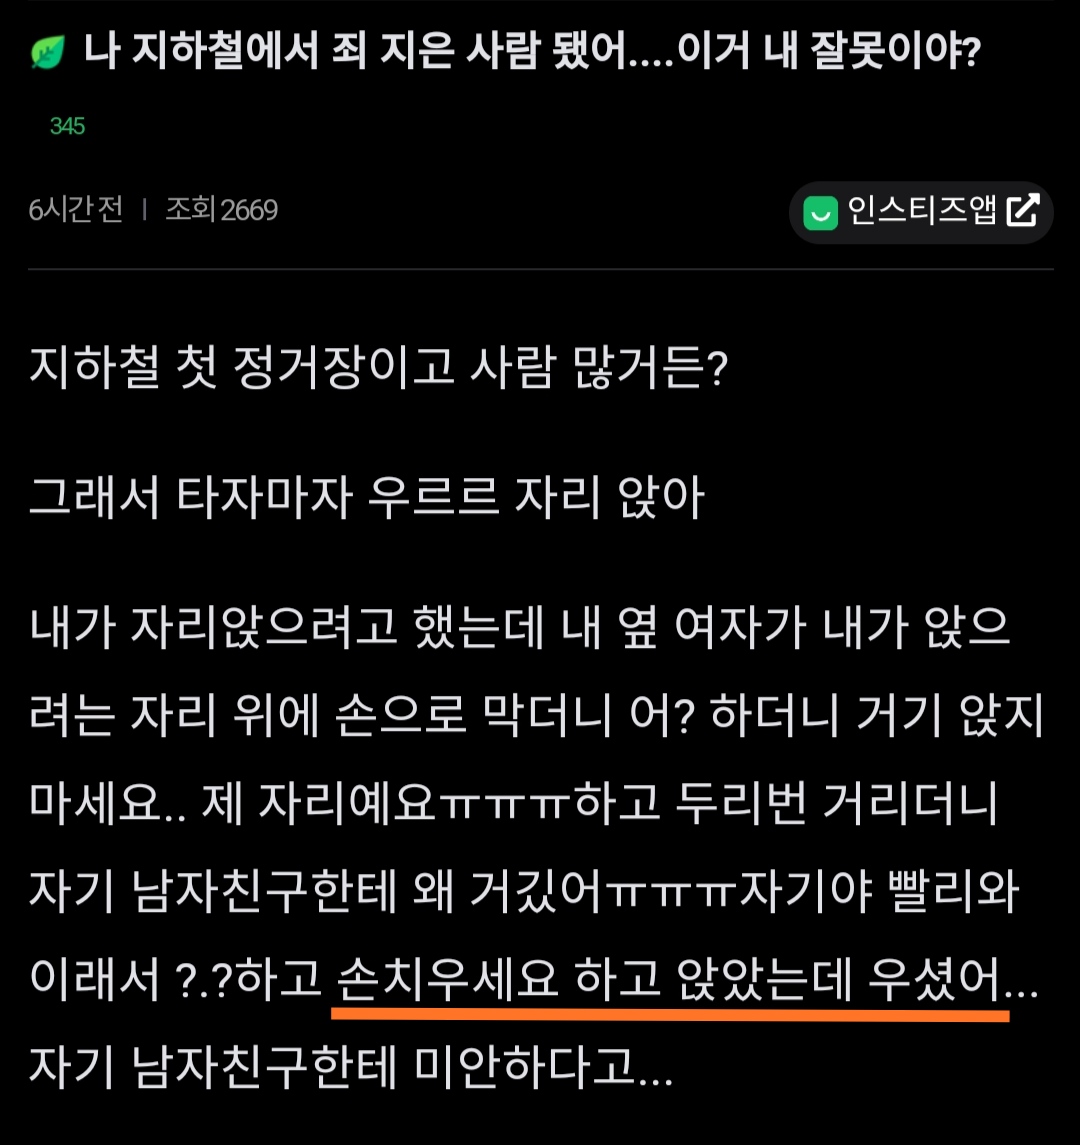 ""지하철타는데 여자 울려버렸어..."".jpg